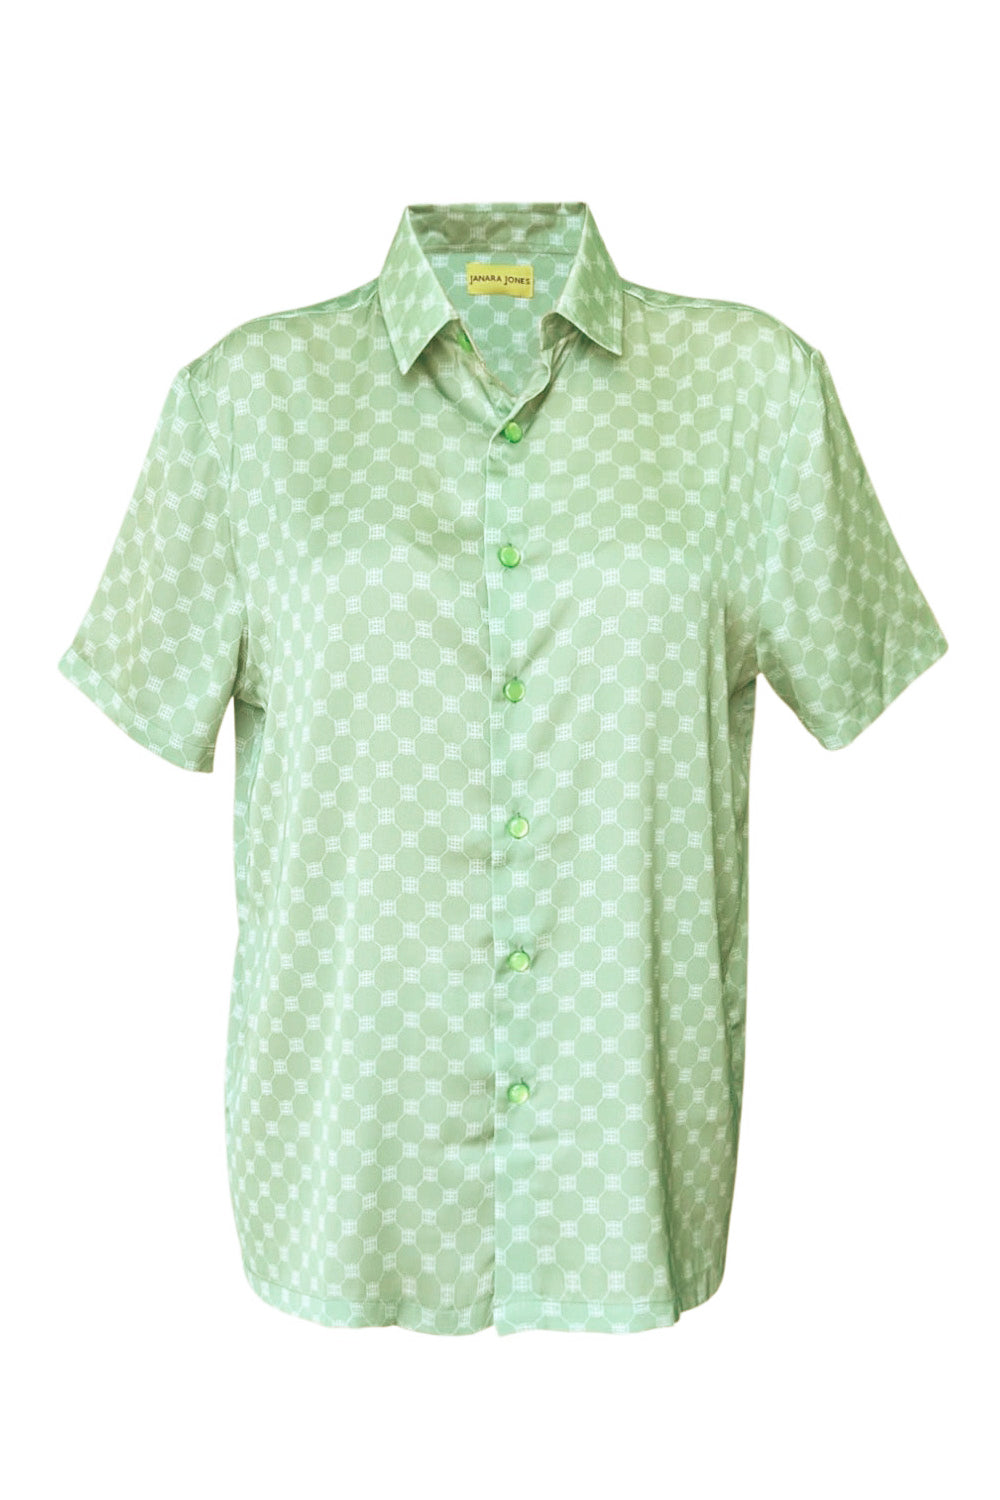 Matcha Latte Satin Short-Sleeve Unisex Shirt